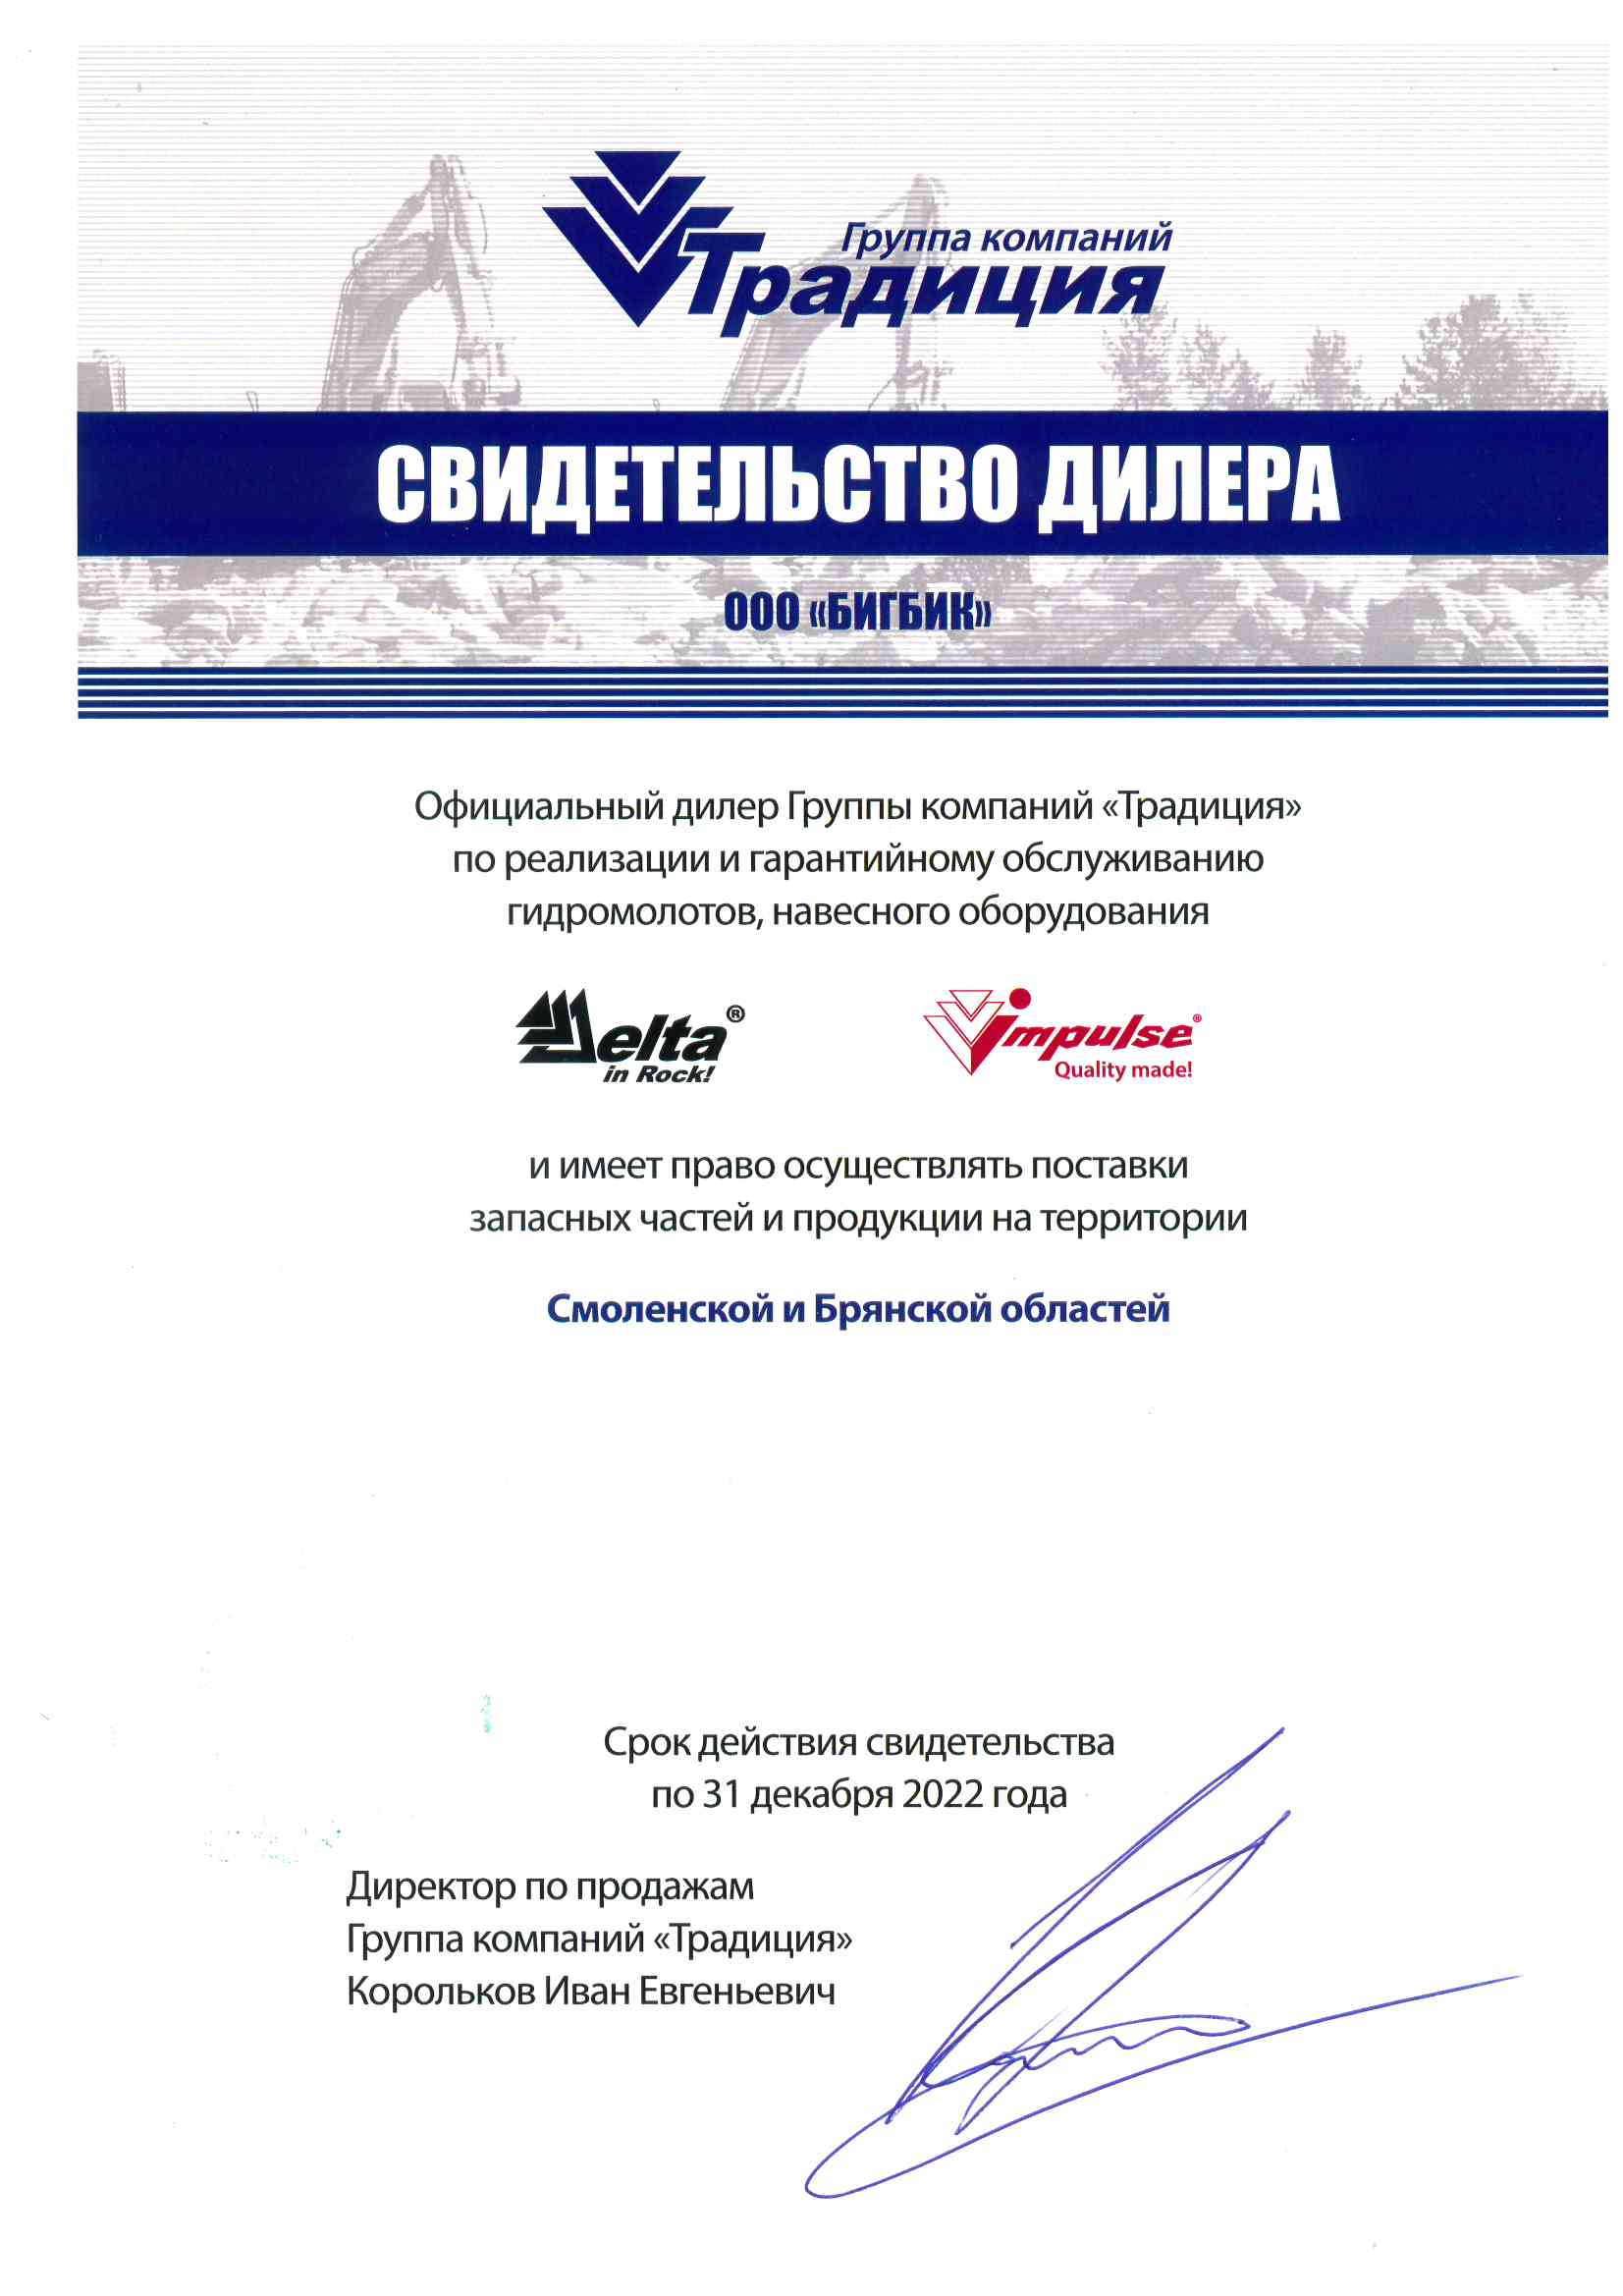 Дилерский сертификат ООО Компания Традиция-К